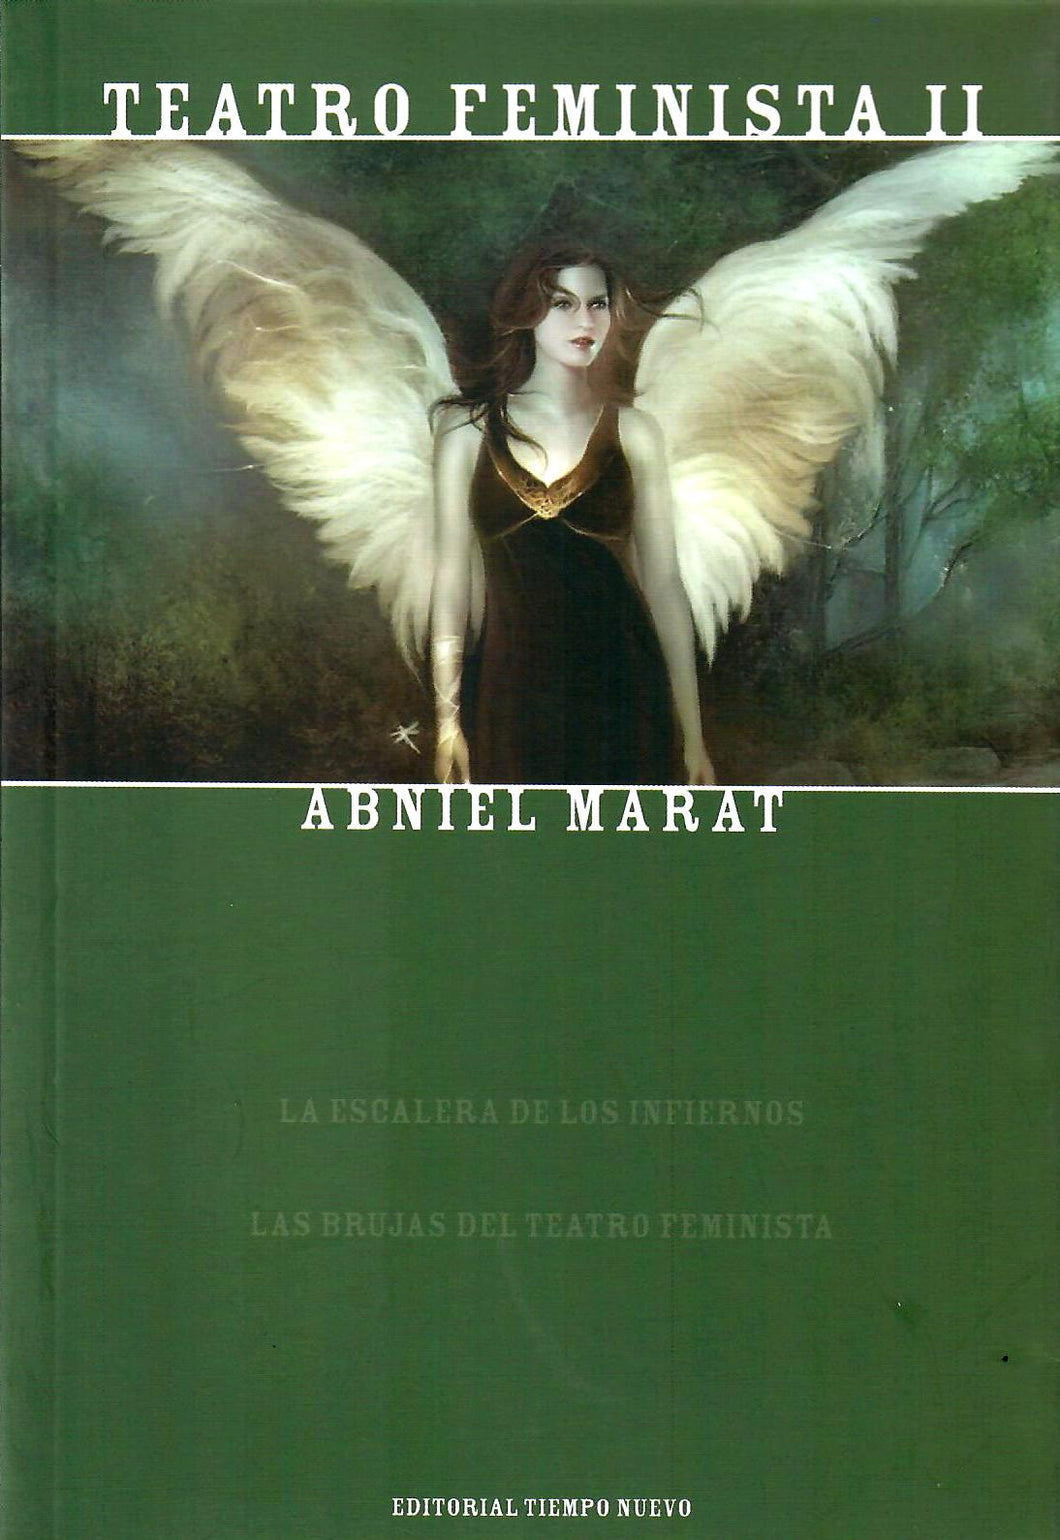 TEATRO FEMINISTA II - Abniel Marat